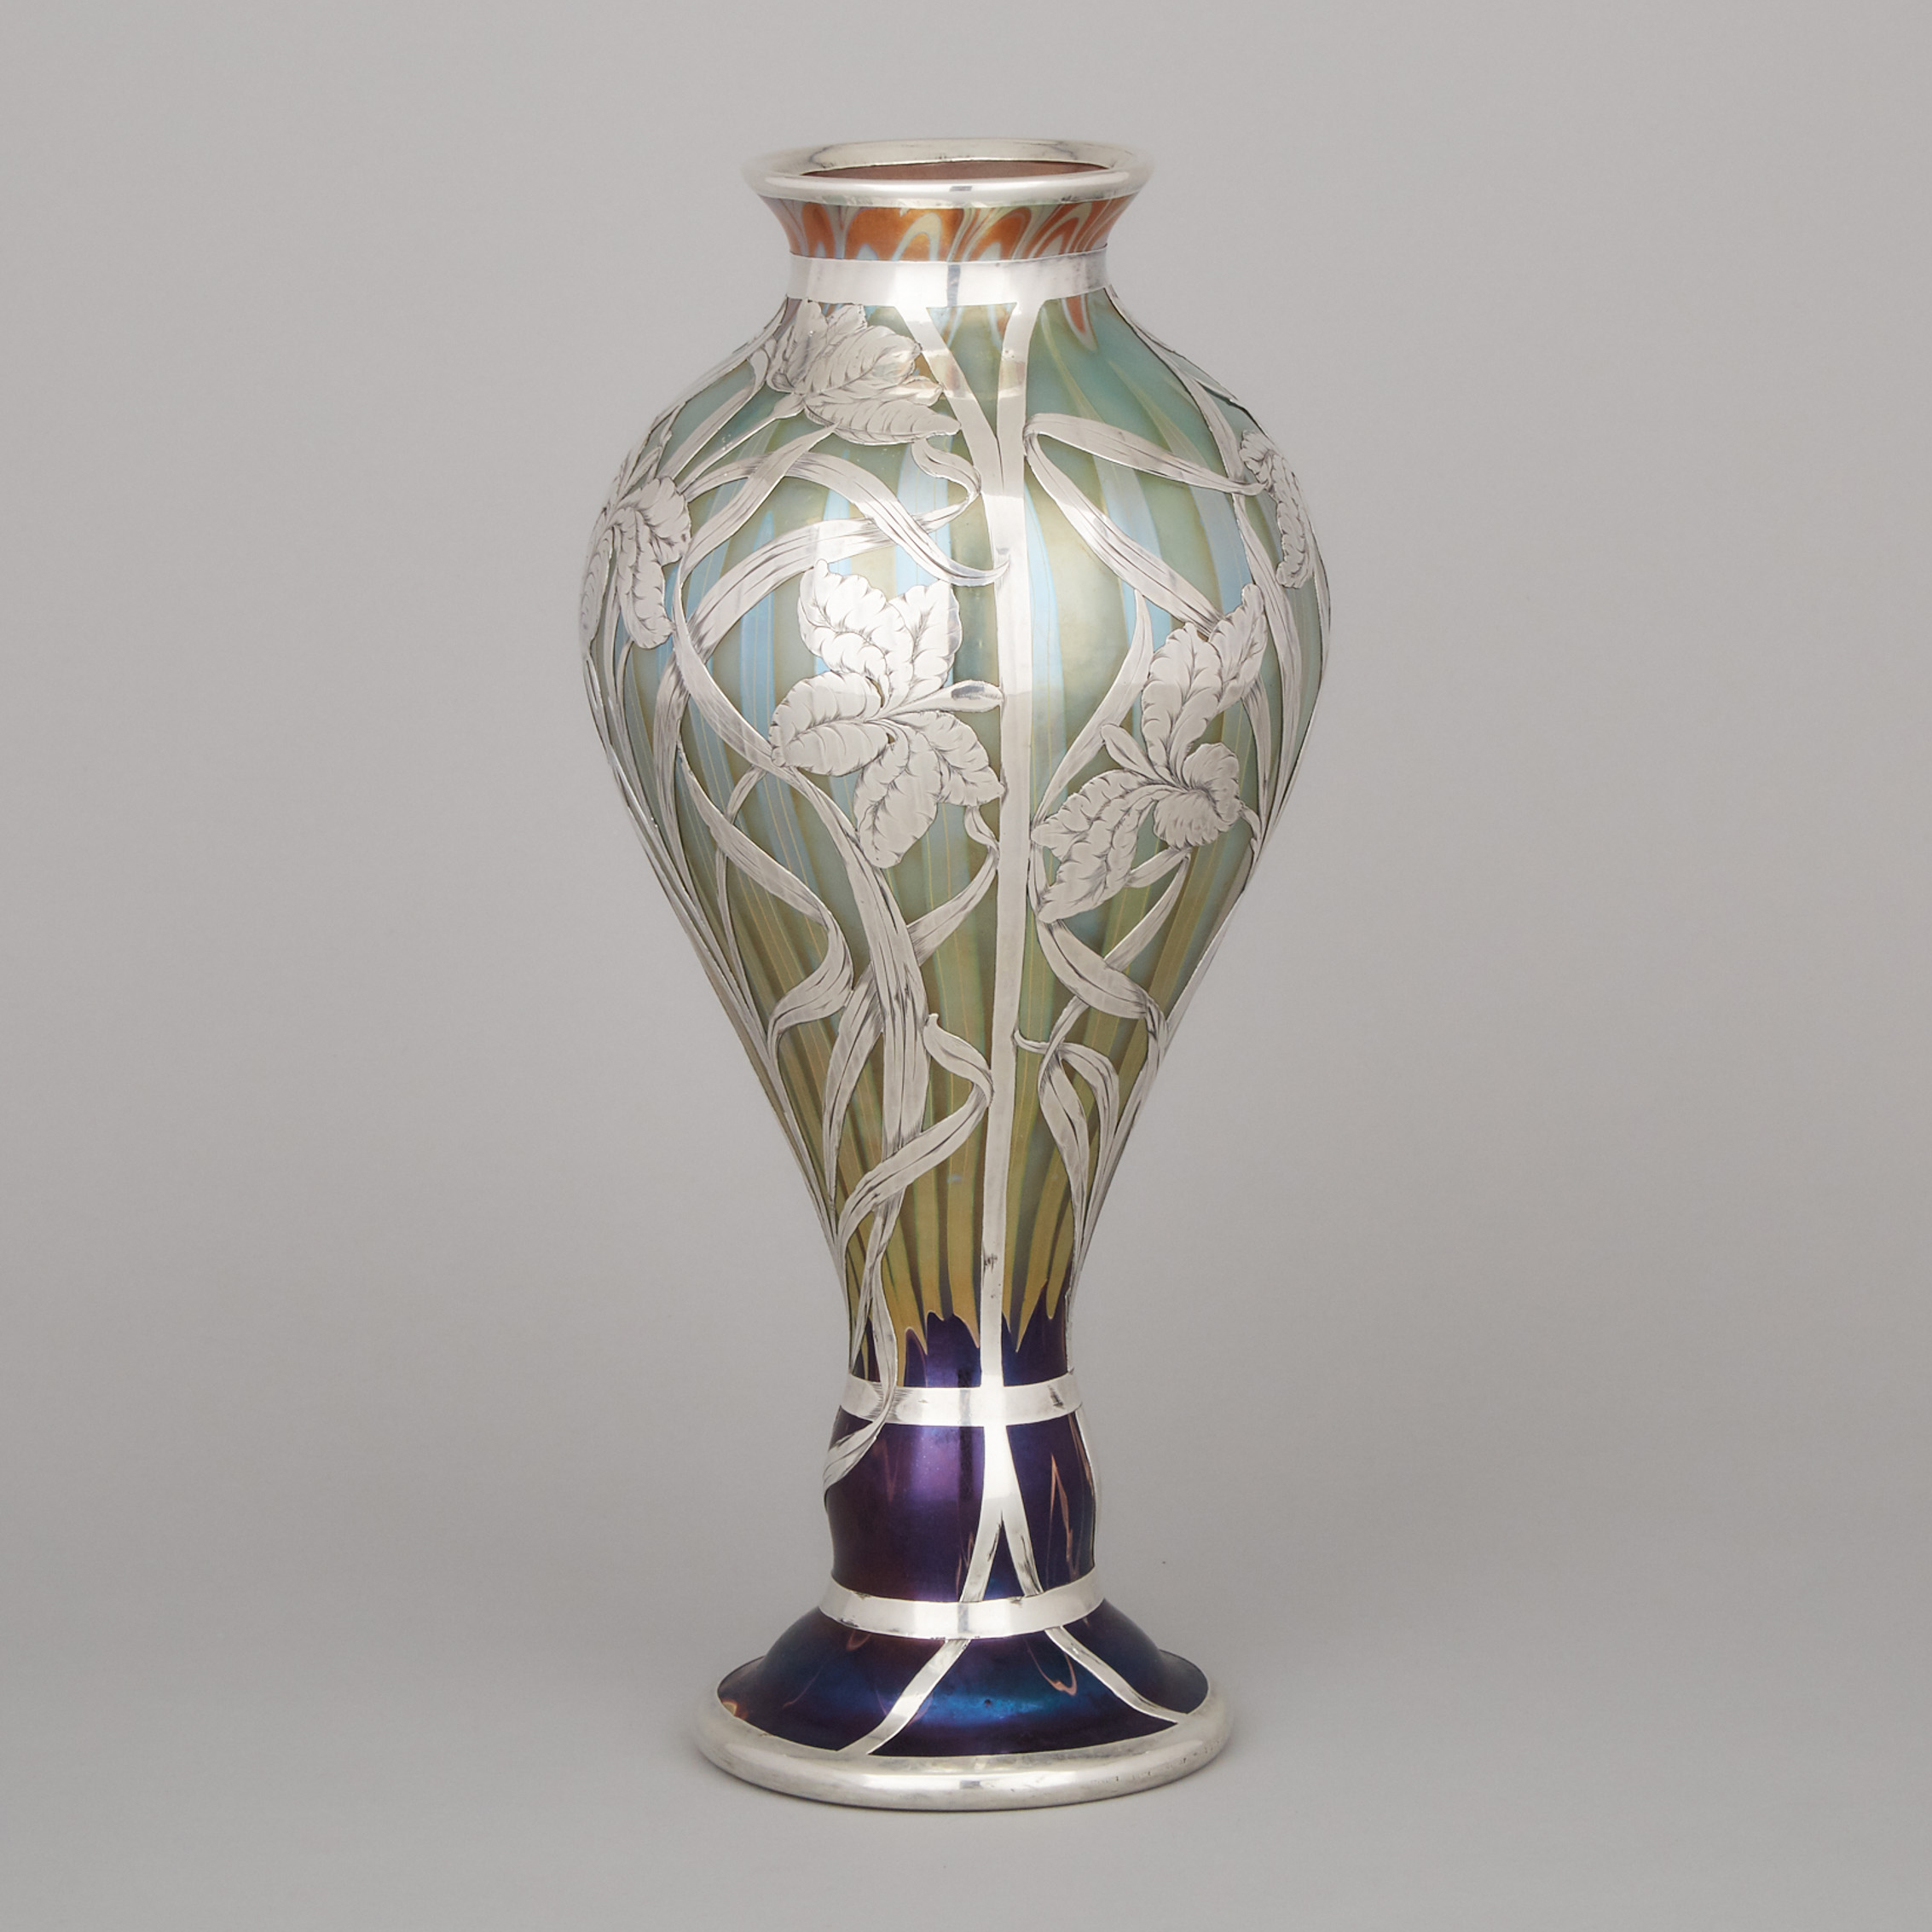 Loetz Engraved Silver Overlaid ‘Phaenomen’ Iridescent Glass Vase, c.1900